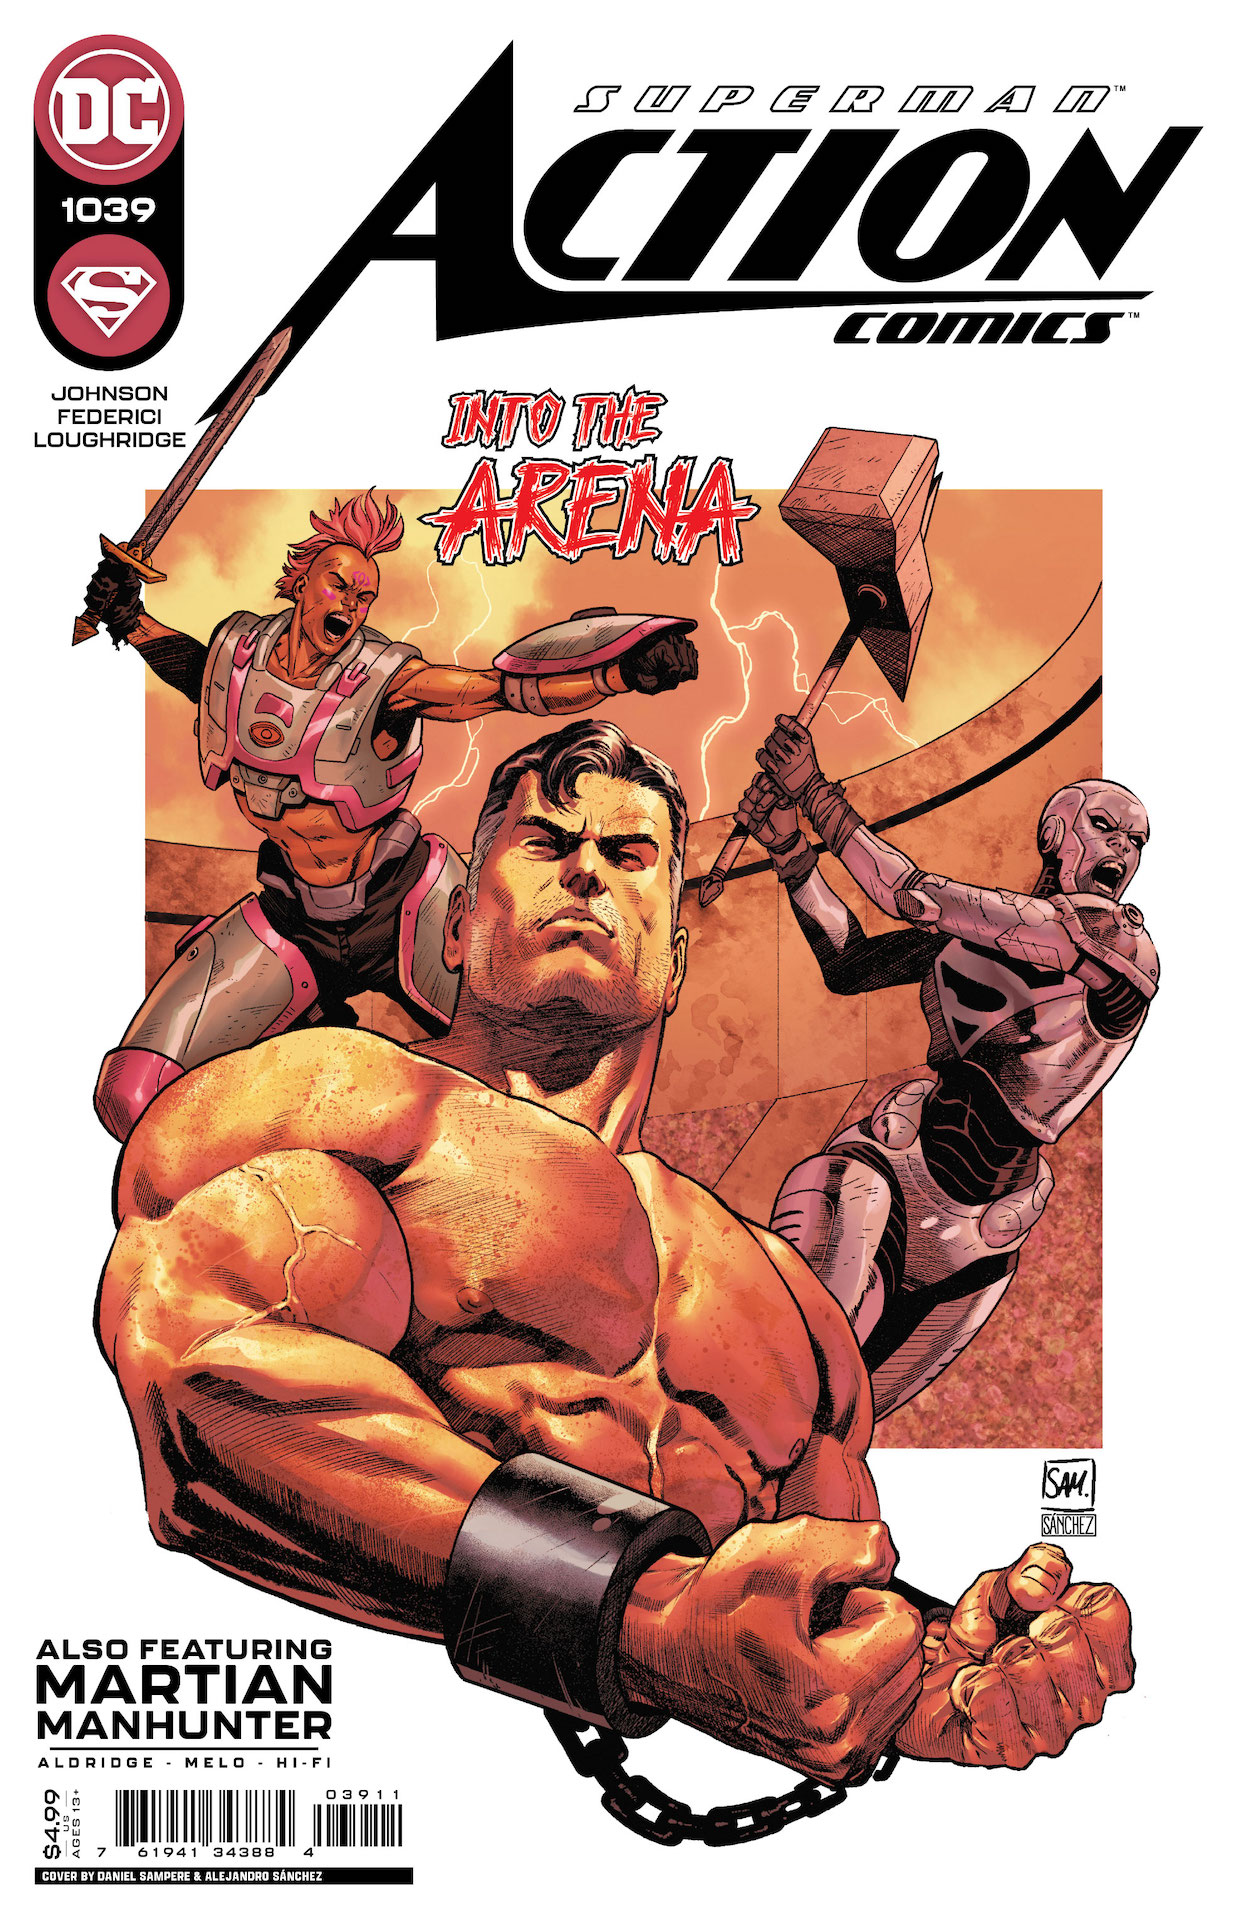 DC Preview: Action Comics #1039